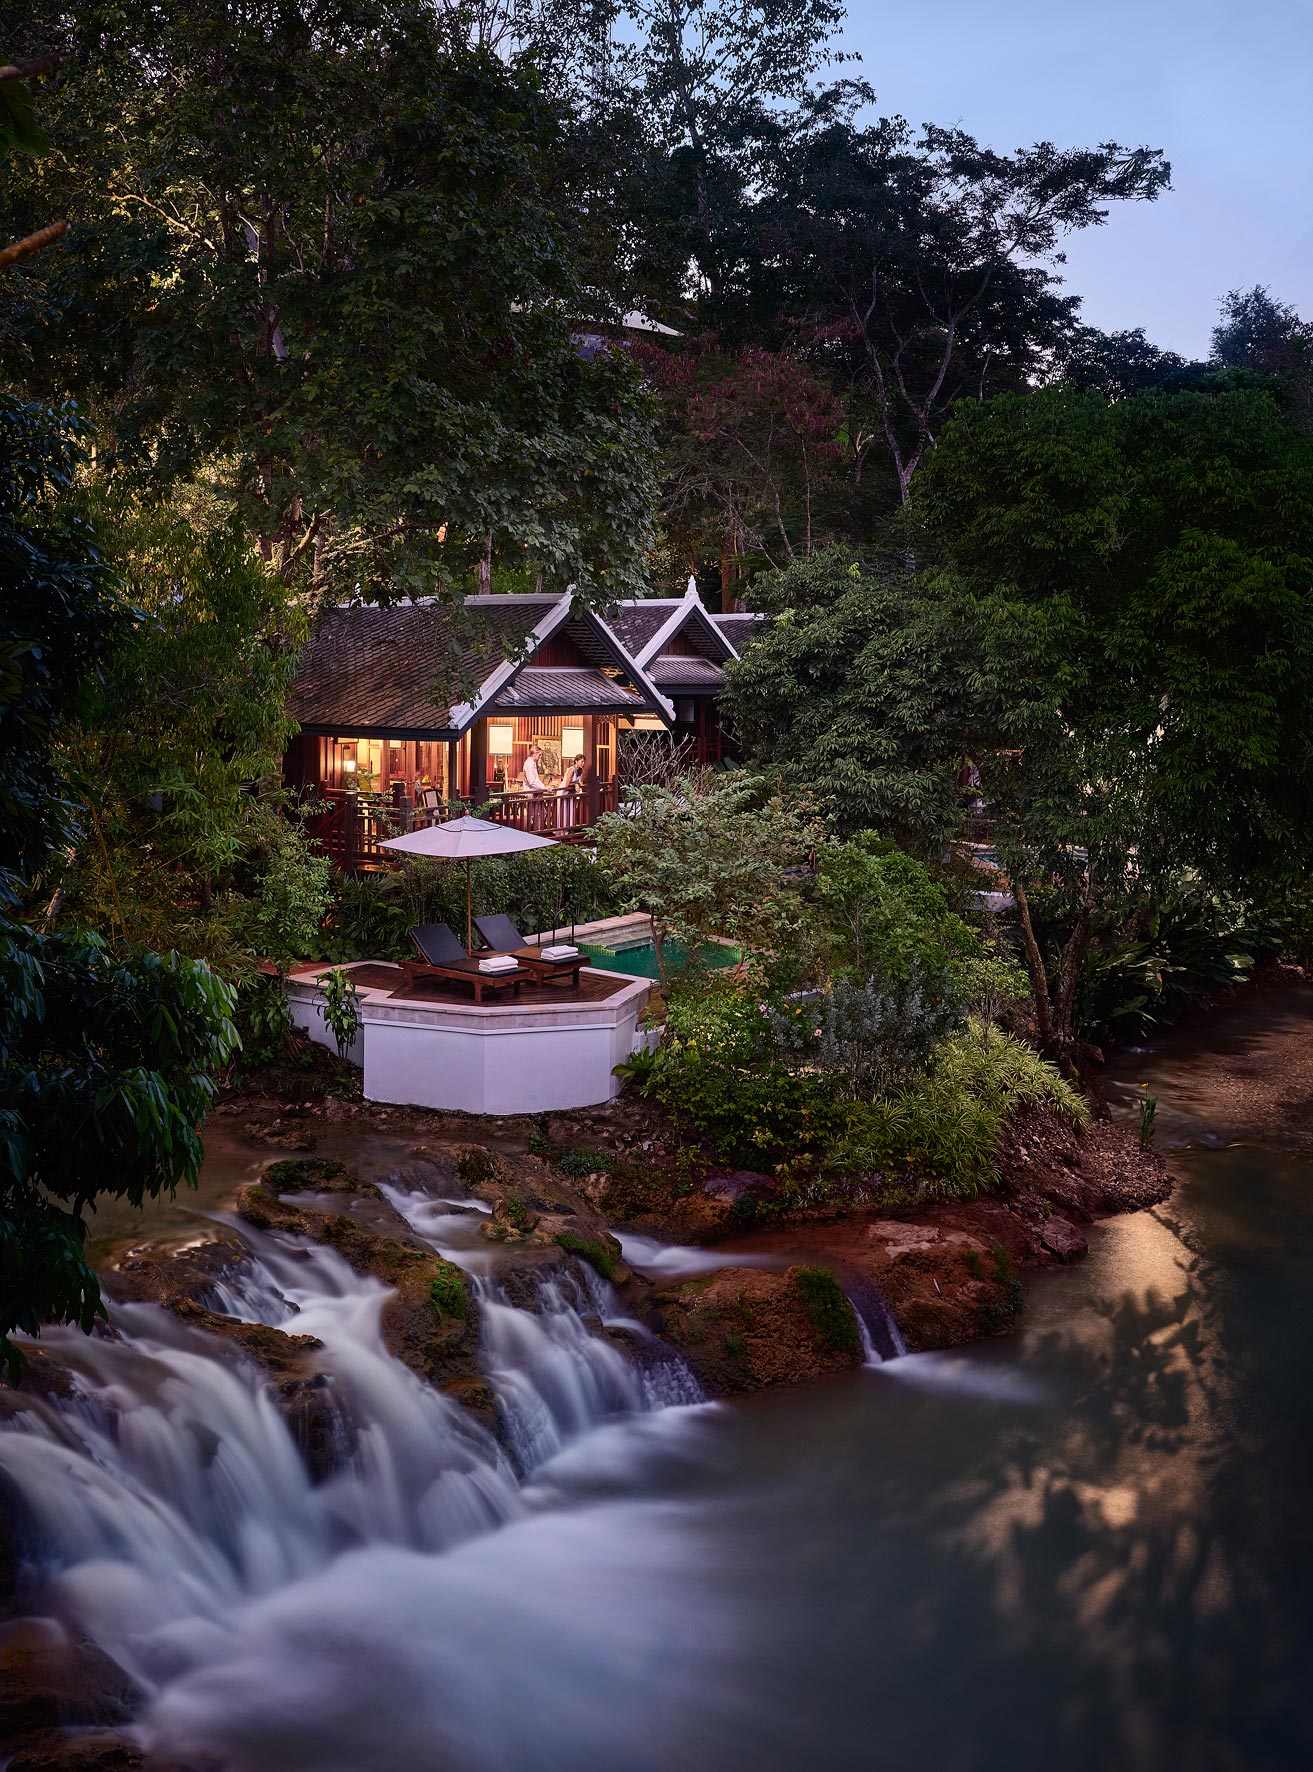 Owen Raggett, Architectural photographer, Singapore. Rosewood Hotel, Luang Prabang, Laos. 